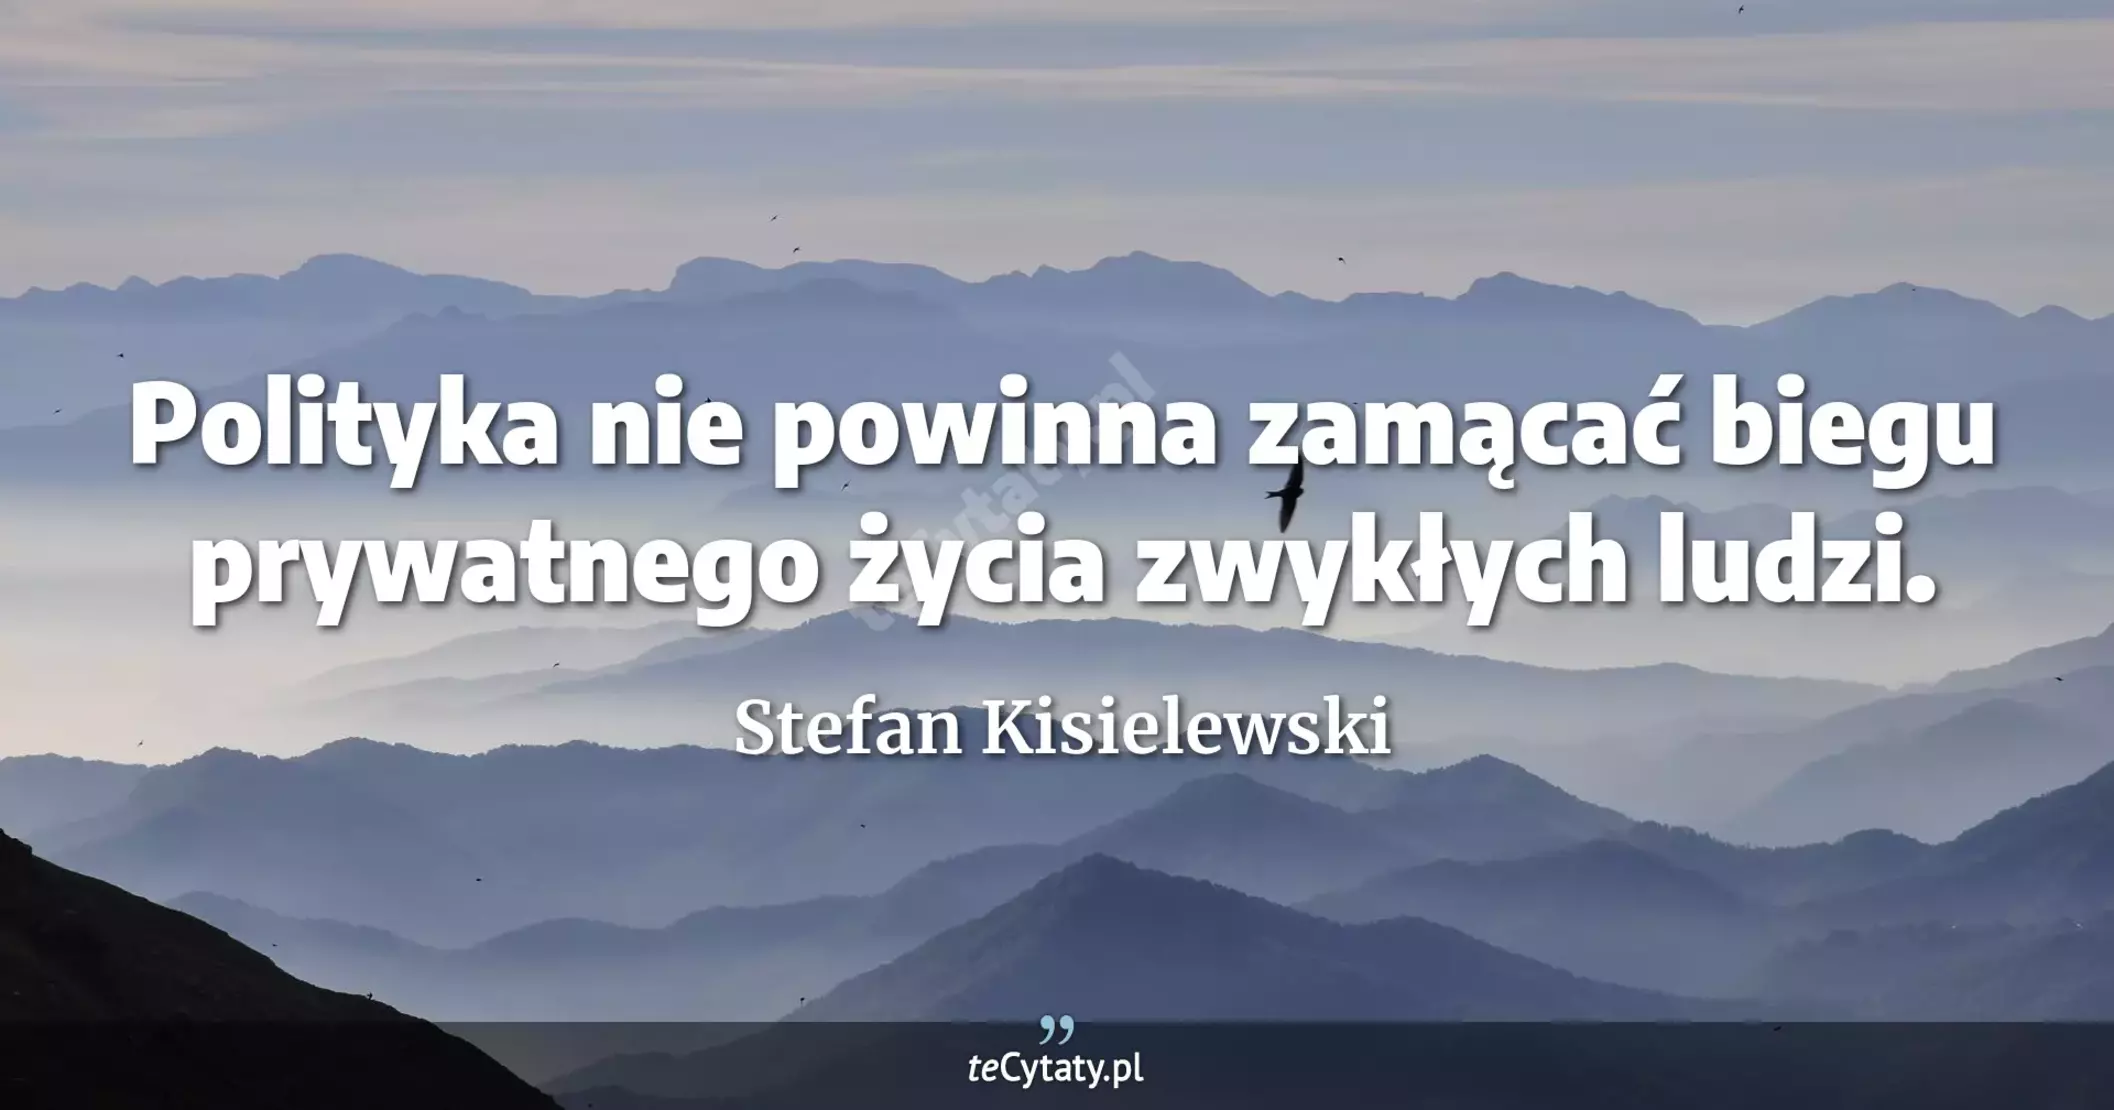 Polityka nie powinna zamącać biegu prywatnego życia zwykłych ludzi. - Stefan Kisielewski